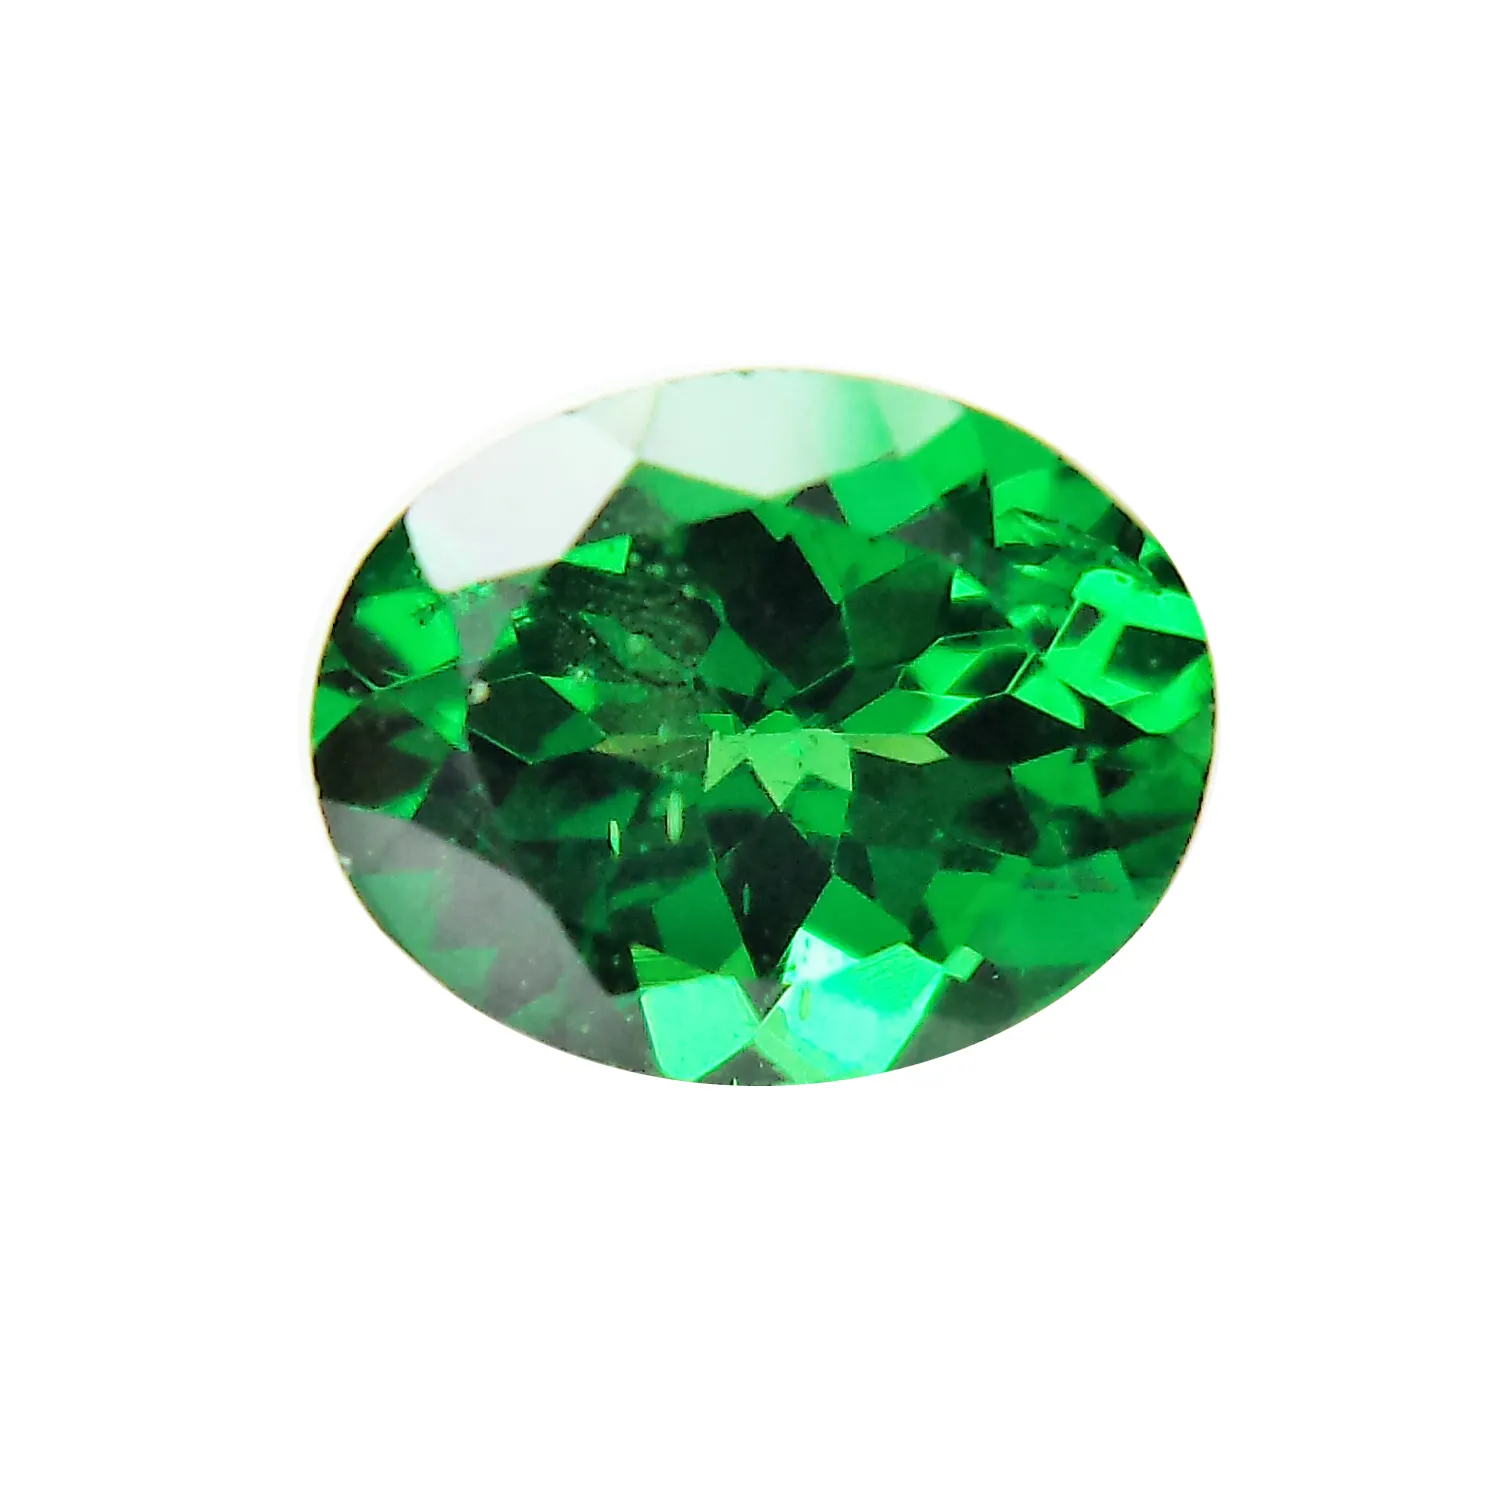 Piedra preciosa de color verde tsavorita natural 100% de corte facetado de forma ovalada al por mayor por quilate piedra de aspecto impresionante para la fabricación de joyas gemas